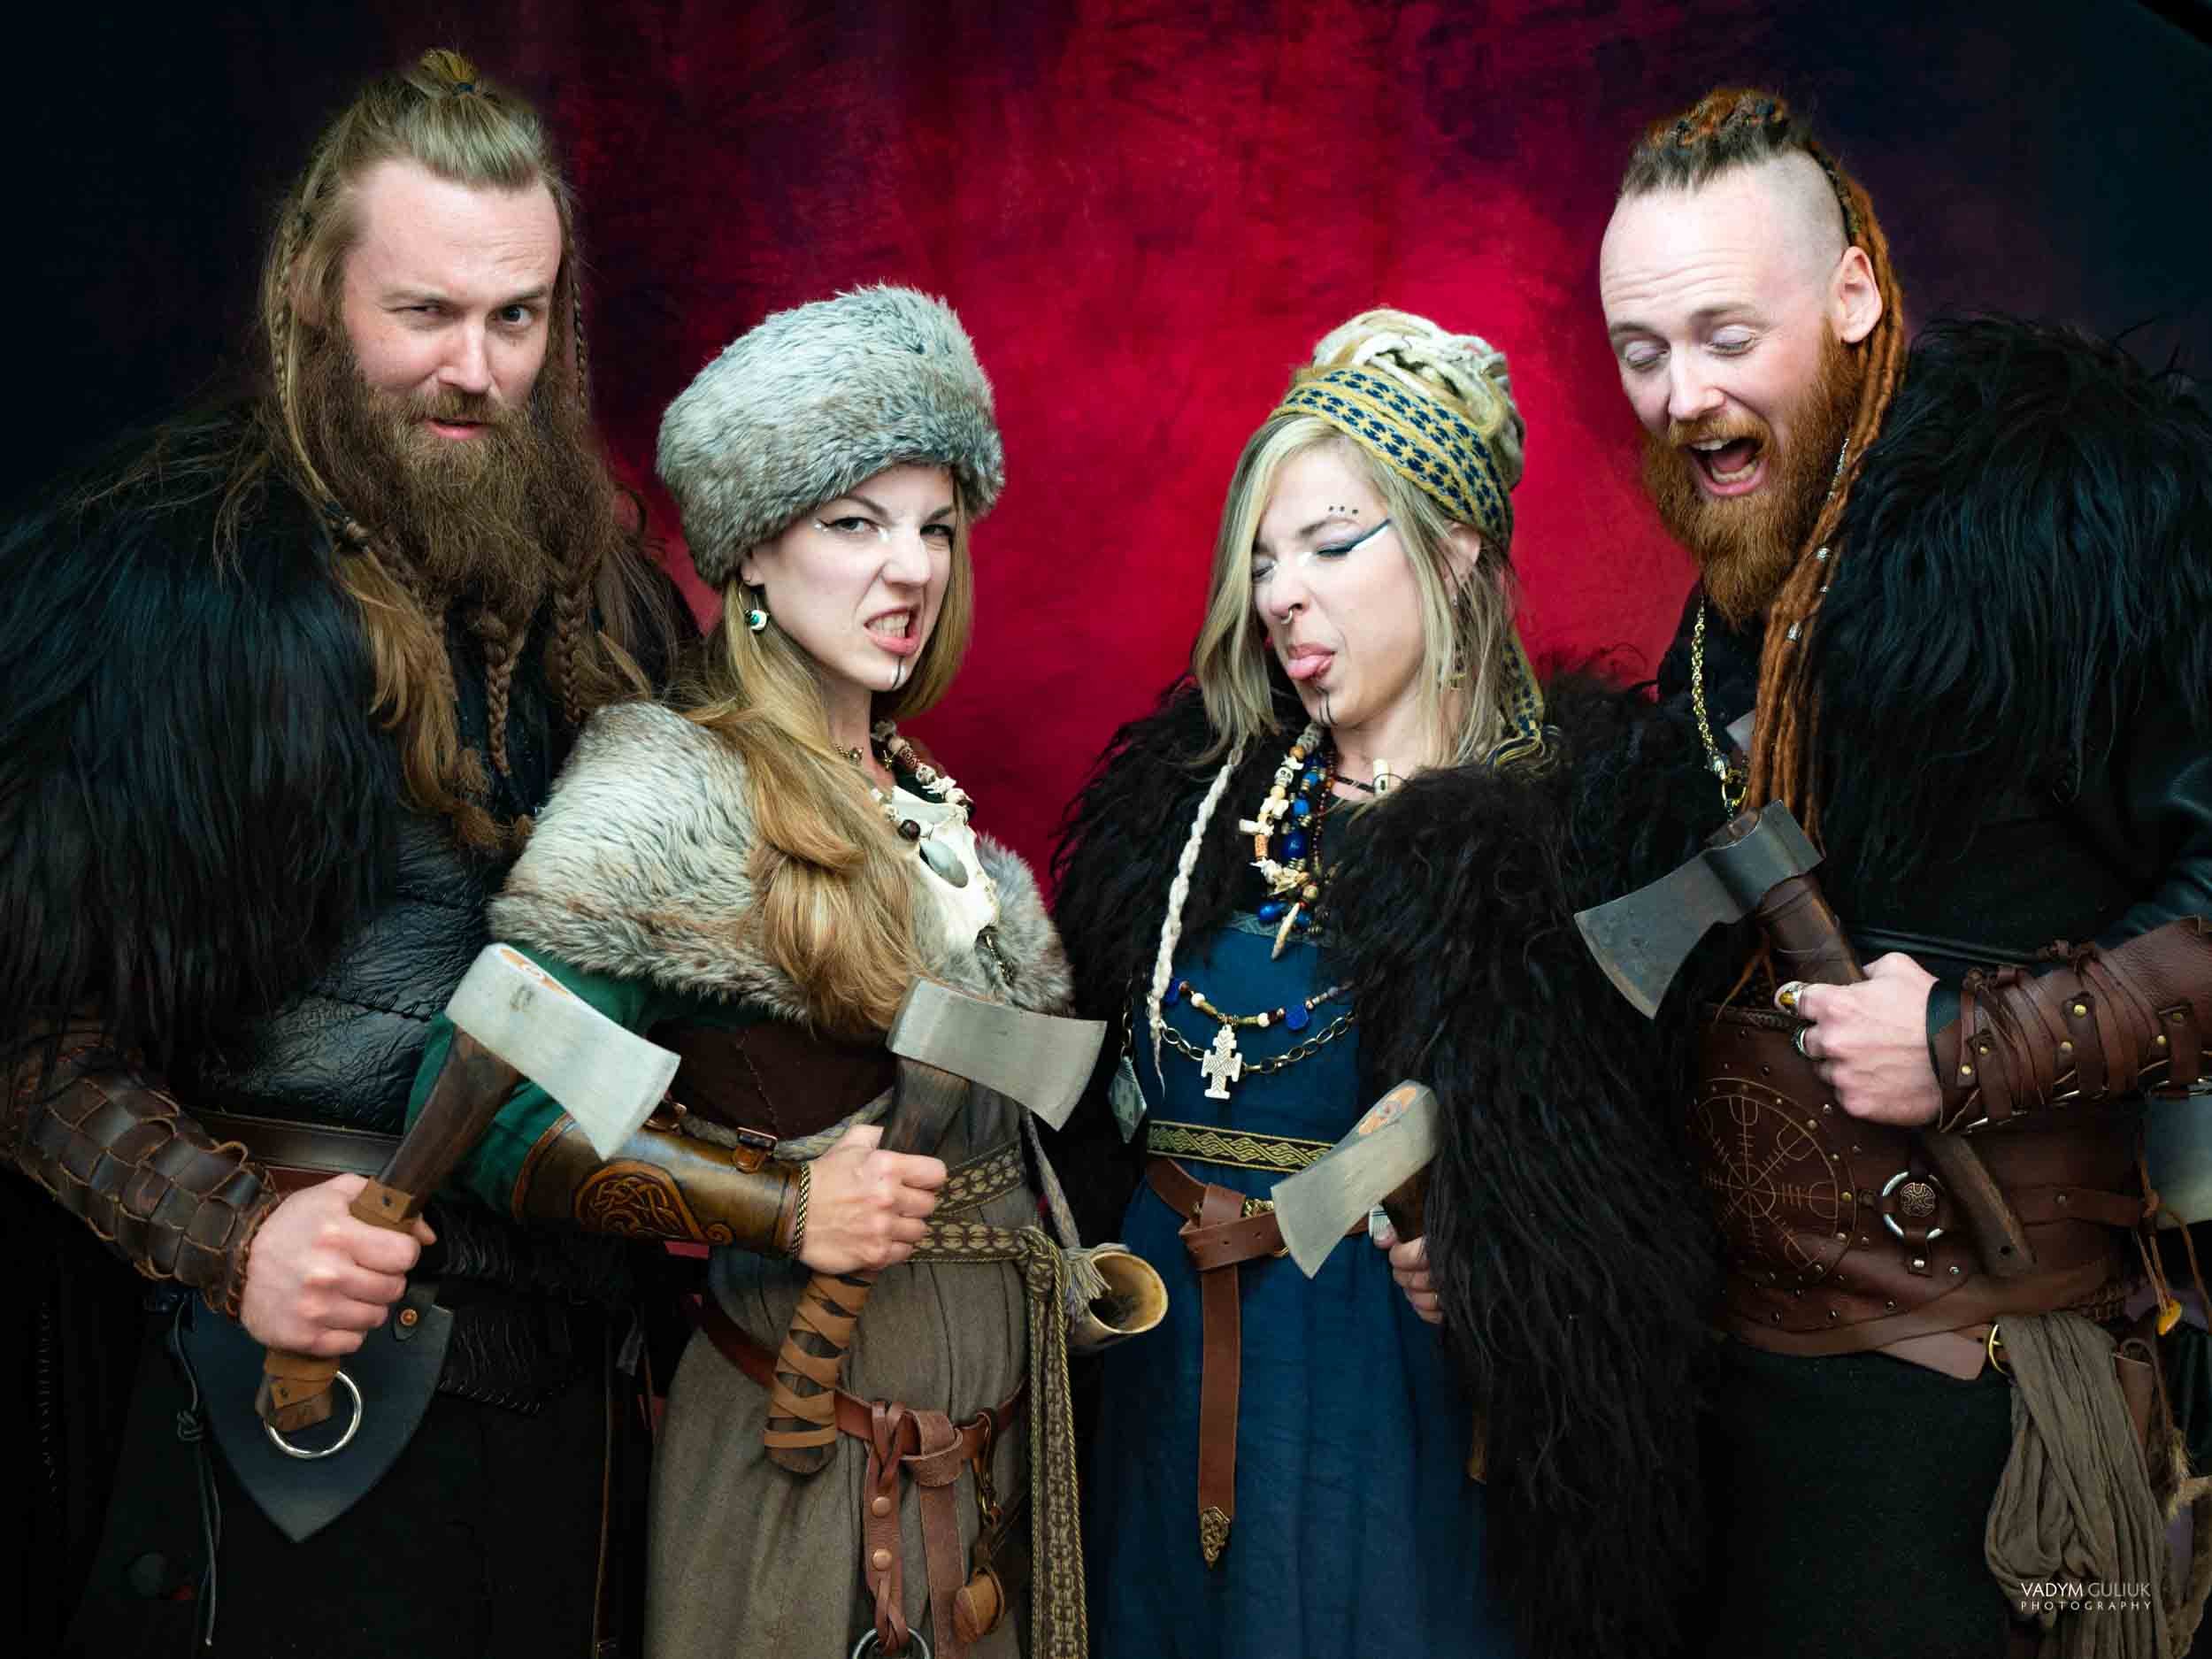 The Vikings Portraits by Vadym 2022-12.jpg